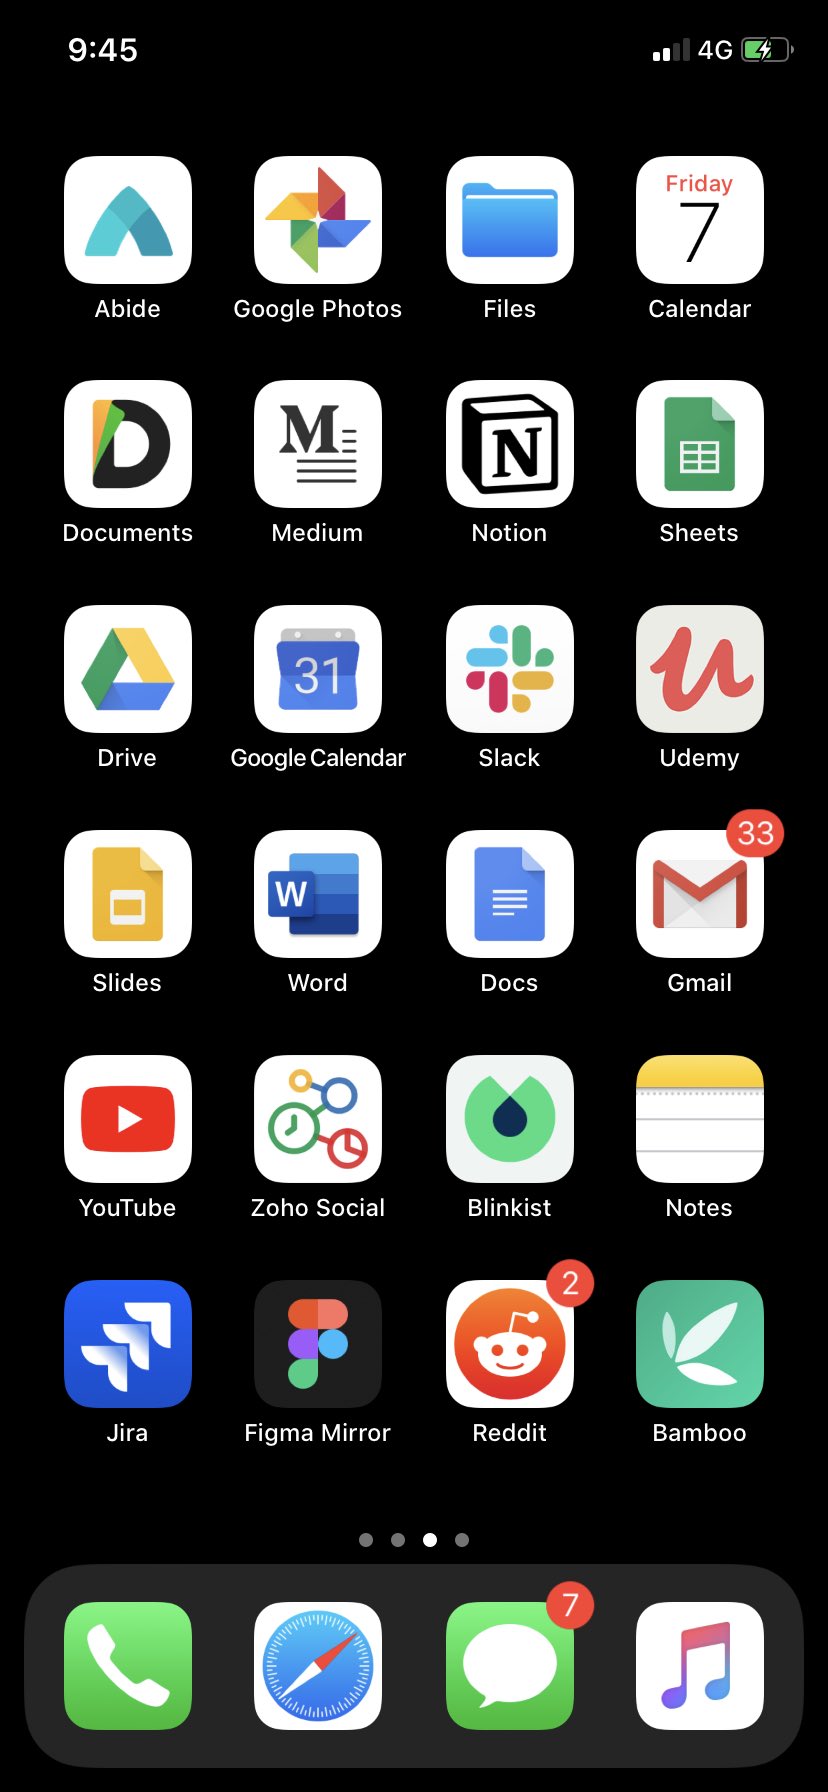 Ios app icons là cách tuyệt vời để tùy chỉnh điện thoại của bạn. Xem hình ảnh để tìm hiểu cách tạo biểu tượng ứng dụng tuyệt đẹp trên thiết bị của bạn! 